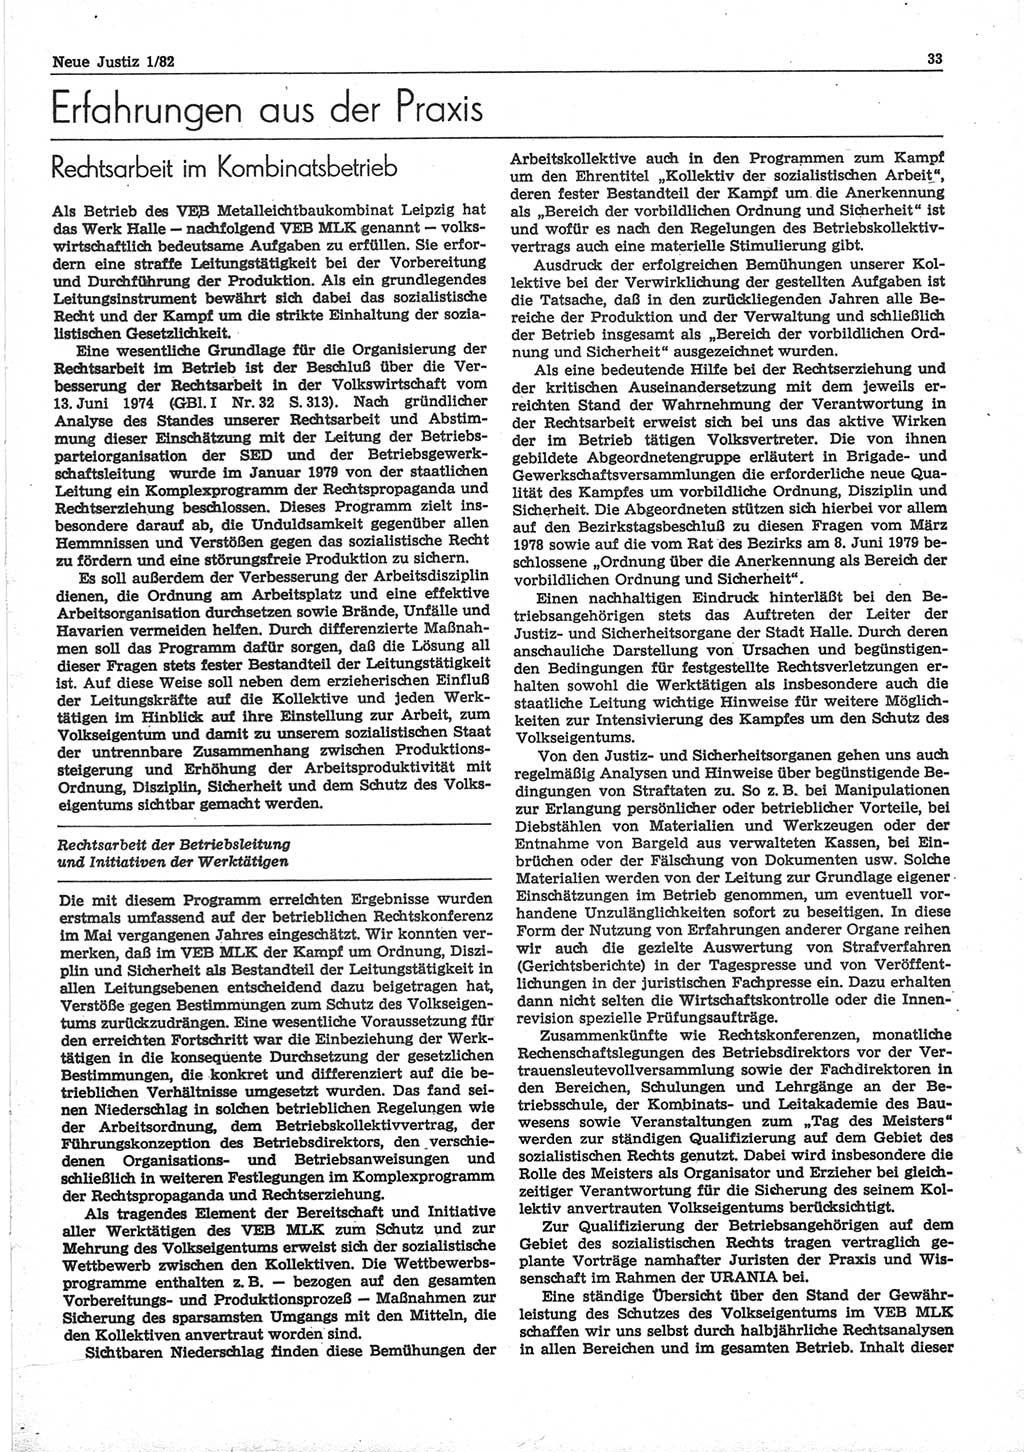 Neue Justiz (NJ), Zeitschrift für sozialistisches Recht und Gesetzlichkeit [Deutsche Demokratische Republik (DDR)], 36. Jahrgang 1982, Seite 33 (NJ DDR 1982, S. 33)